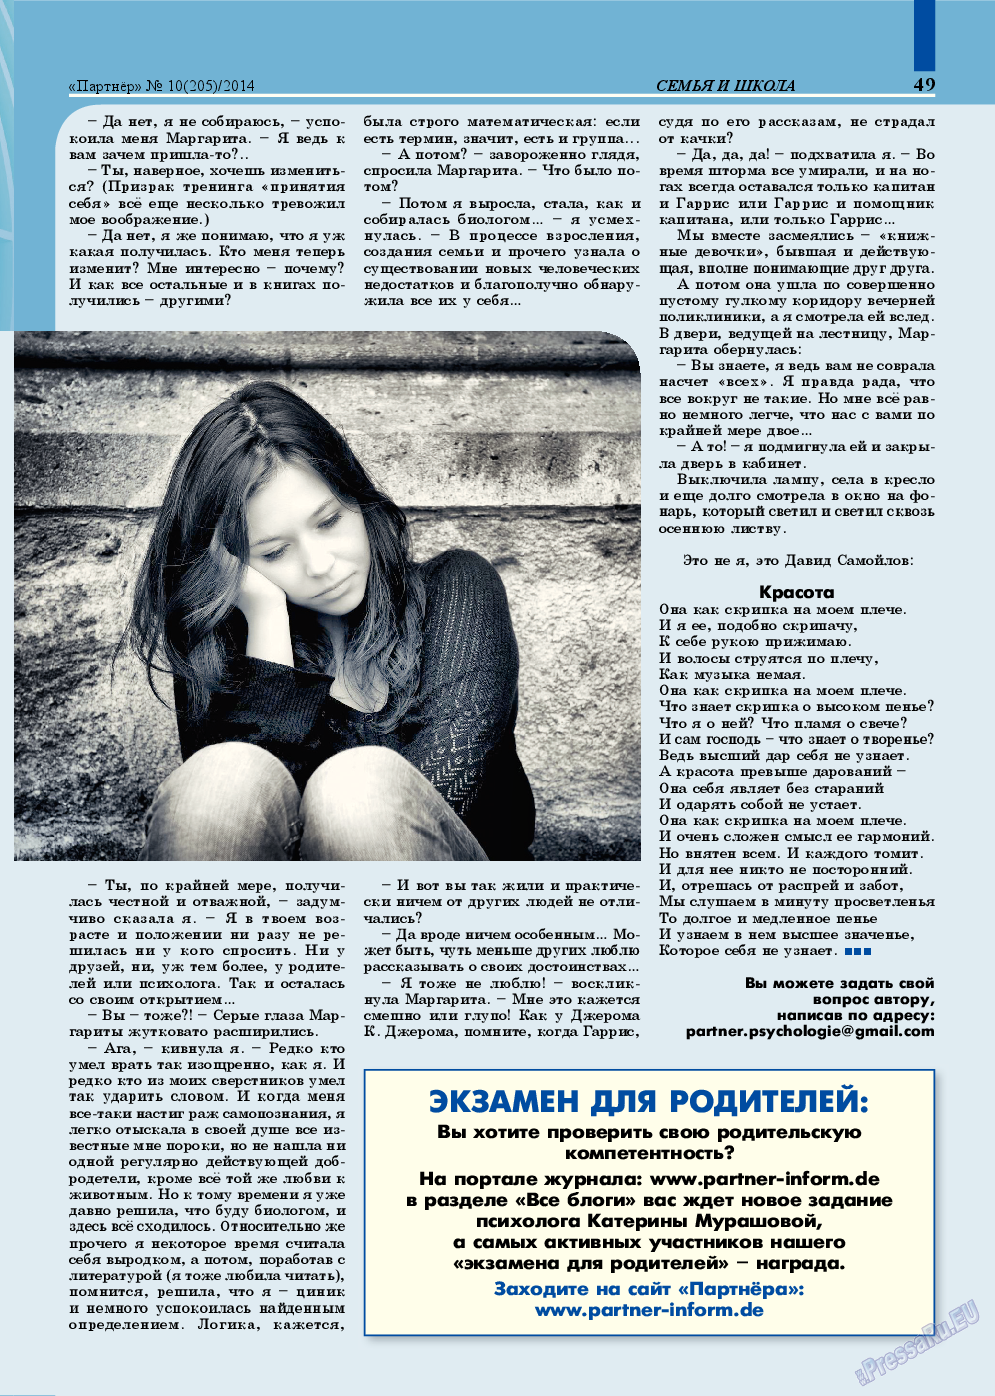 Партнер, журнал. 2014 №10 стр.49